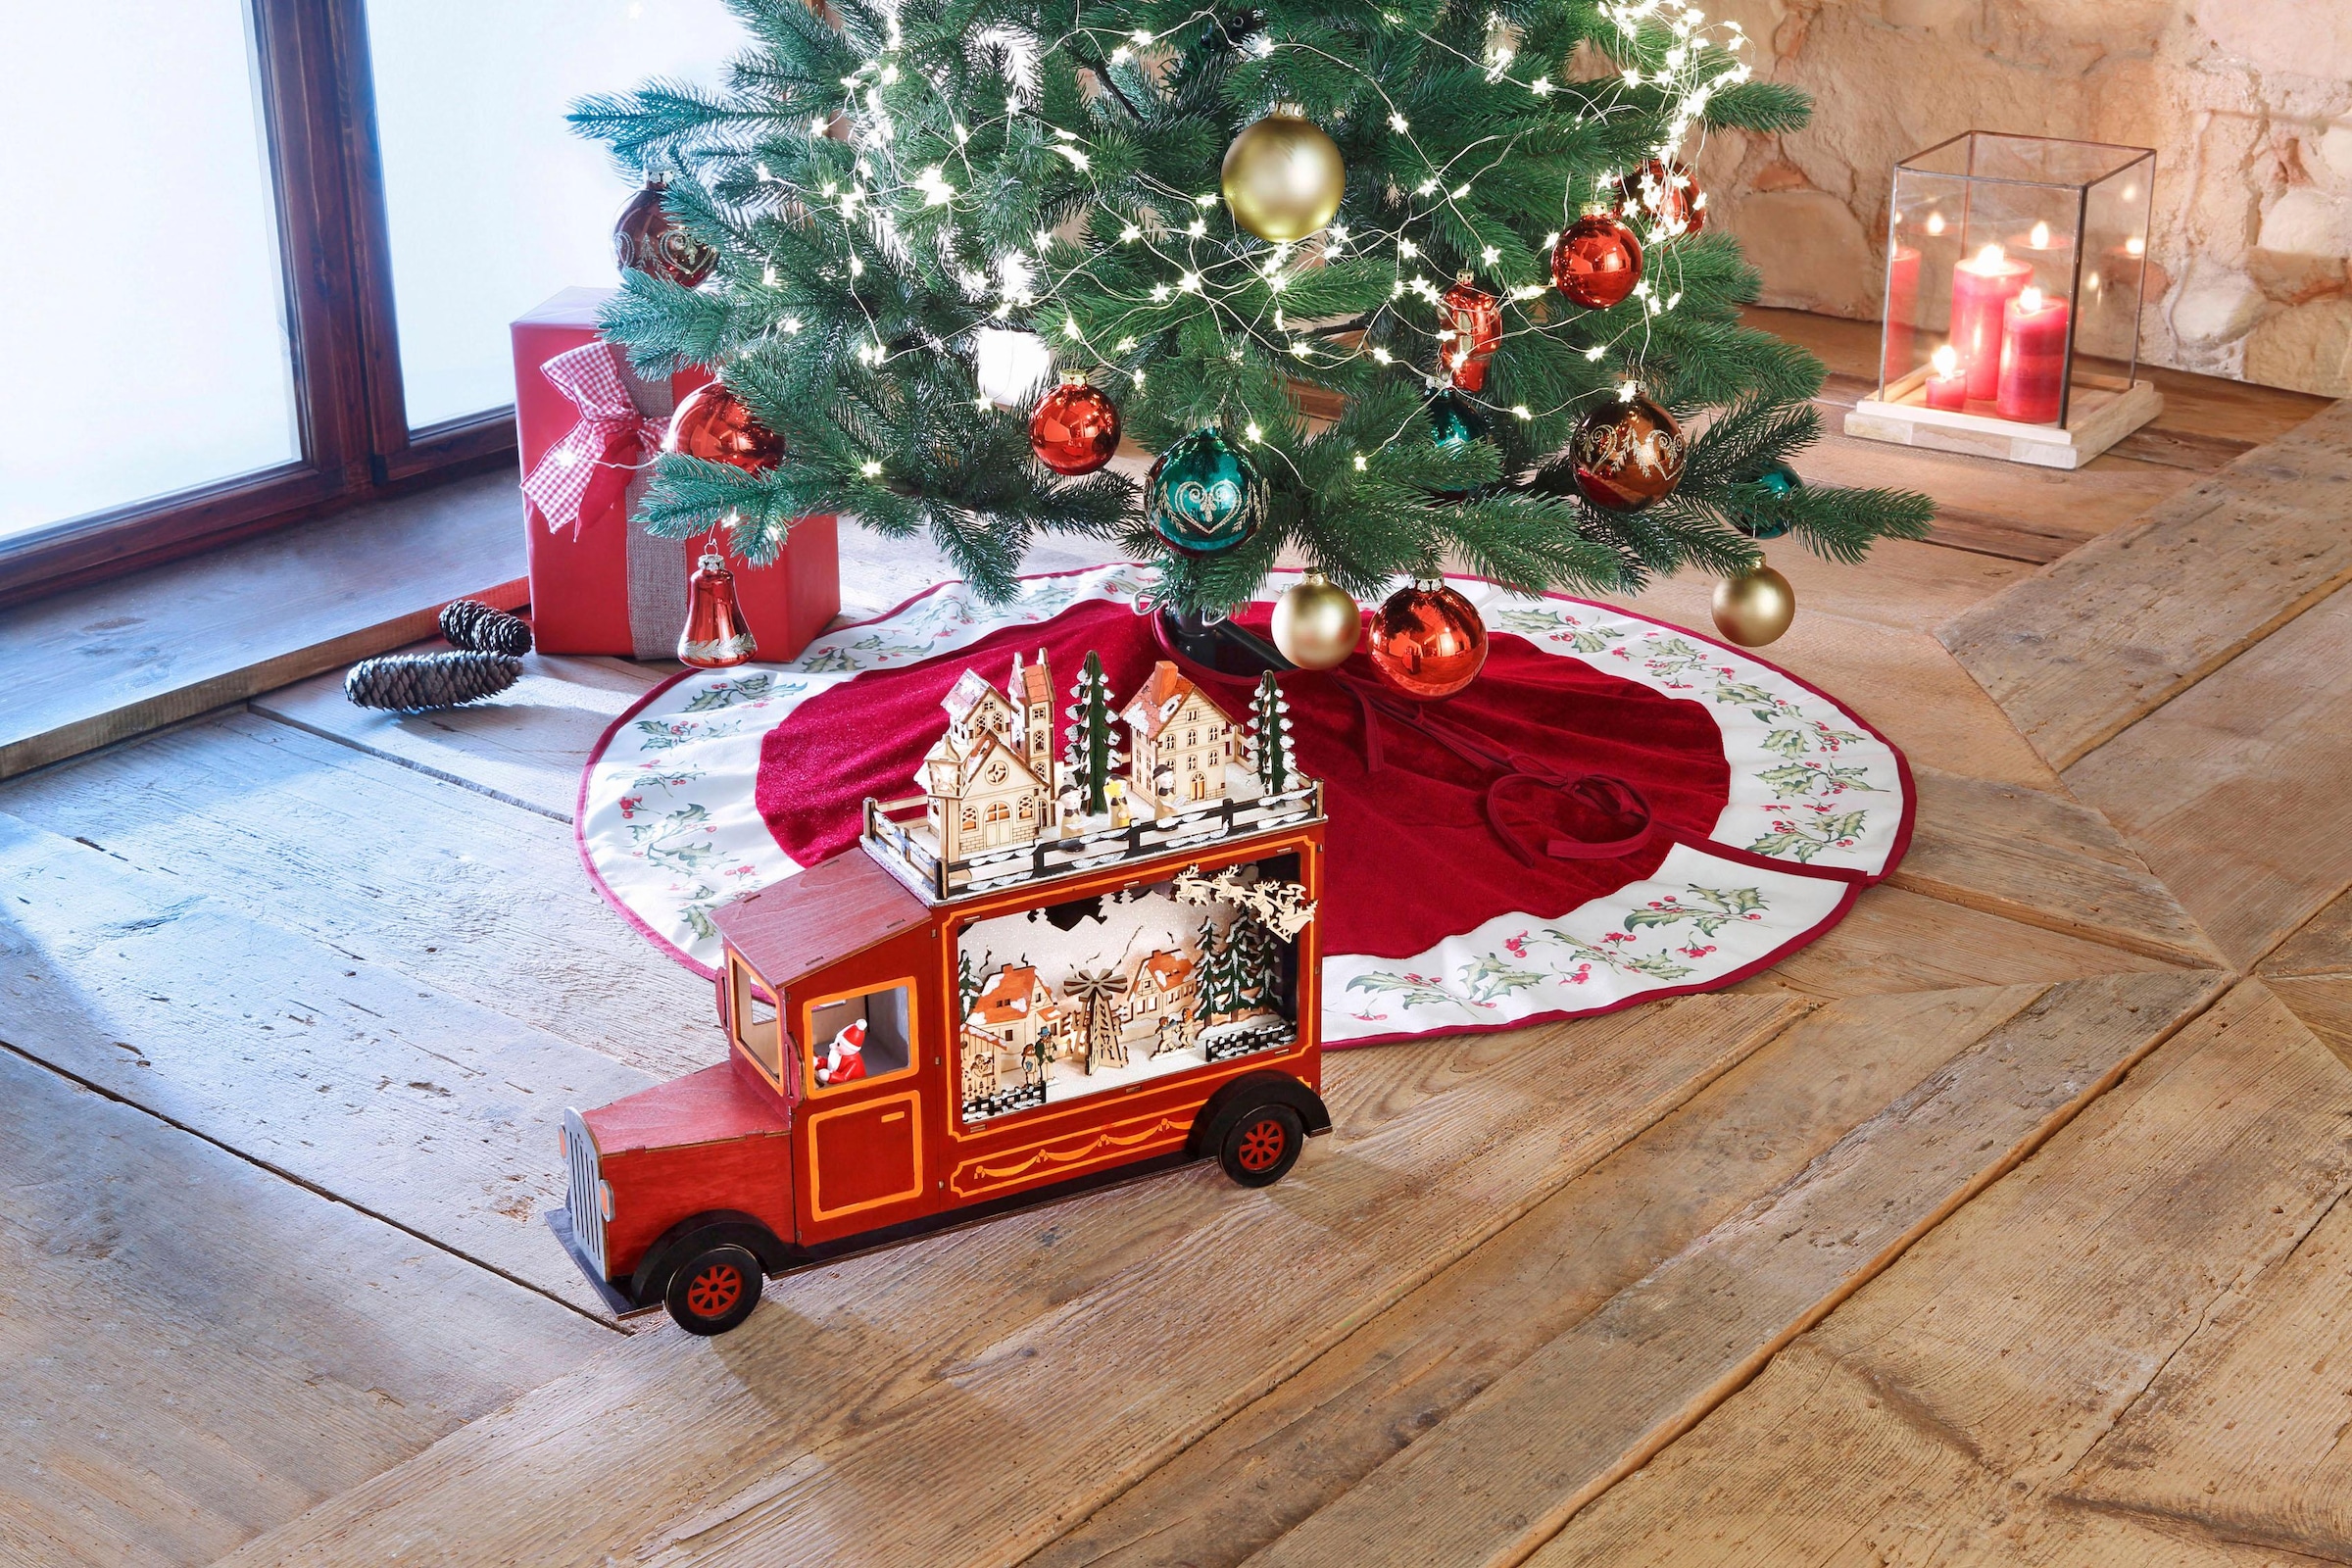 my home Weihnachtsbaumdecke »Blätter, Weihnachtsdeko rot, Christbaumschmuck«, mit breiter Bordüre im weihnachtlichen Design